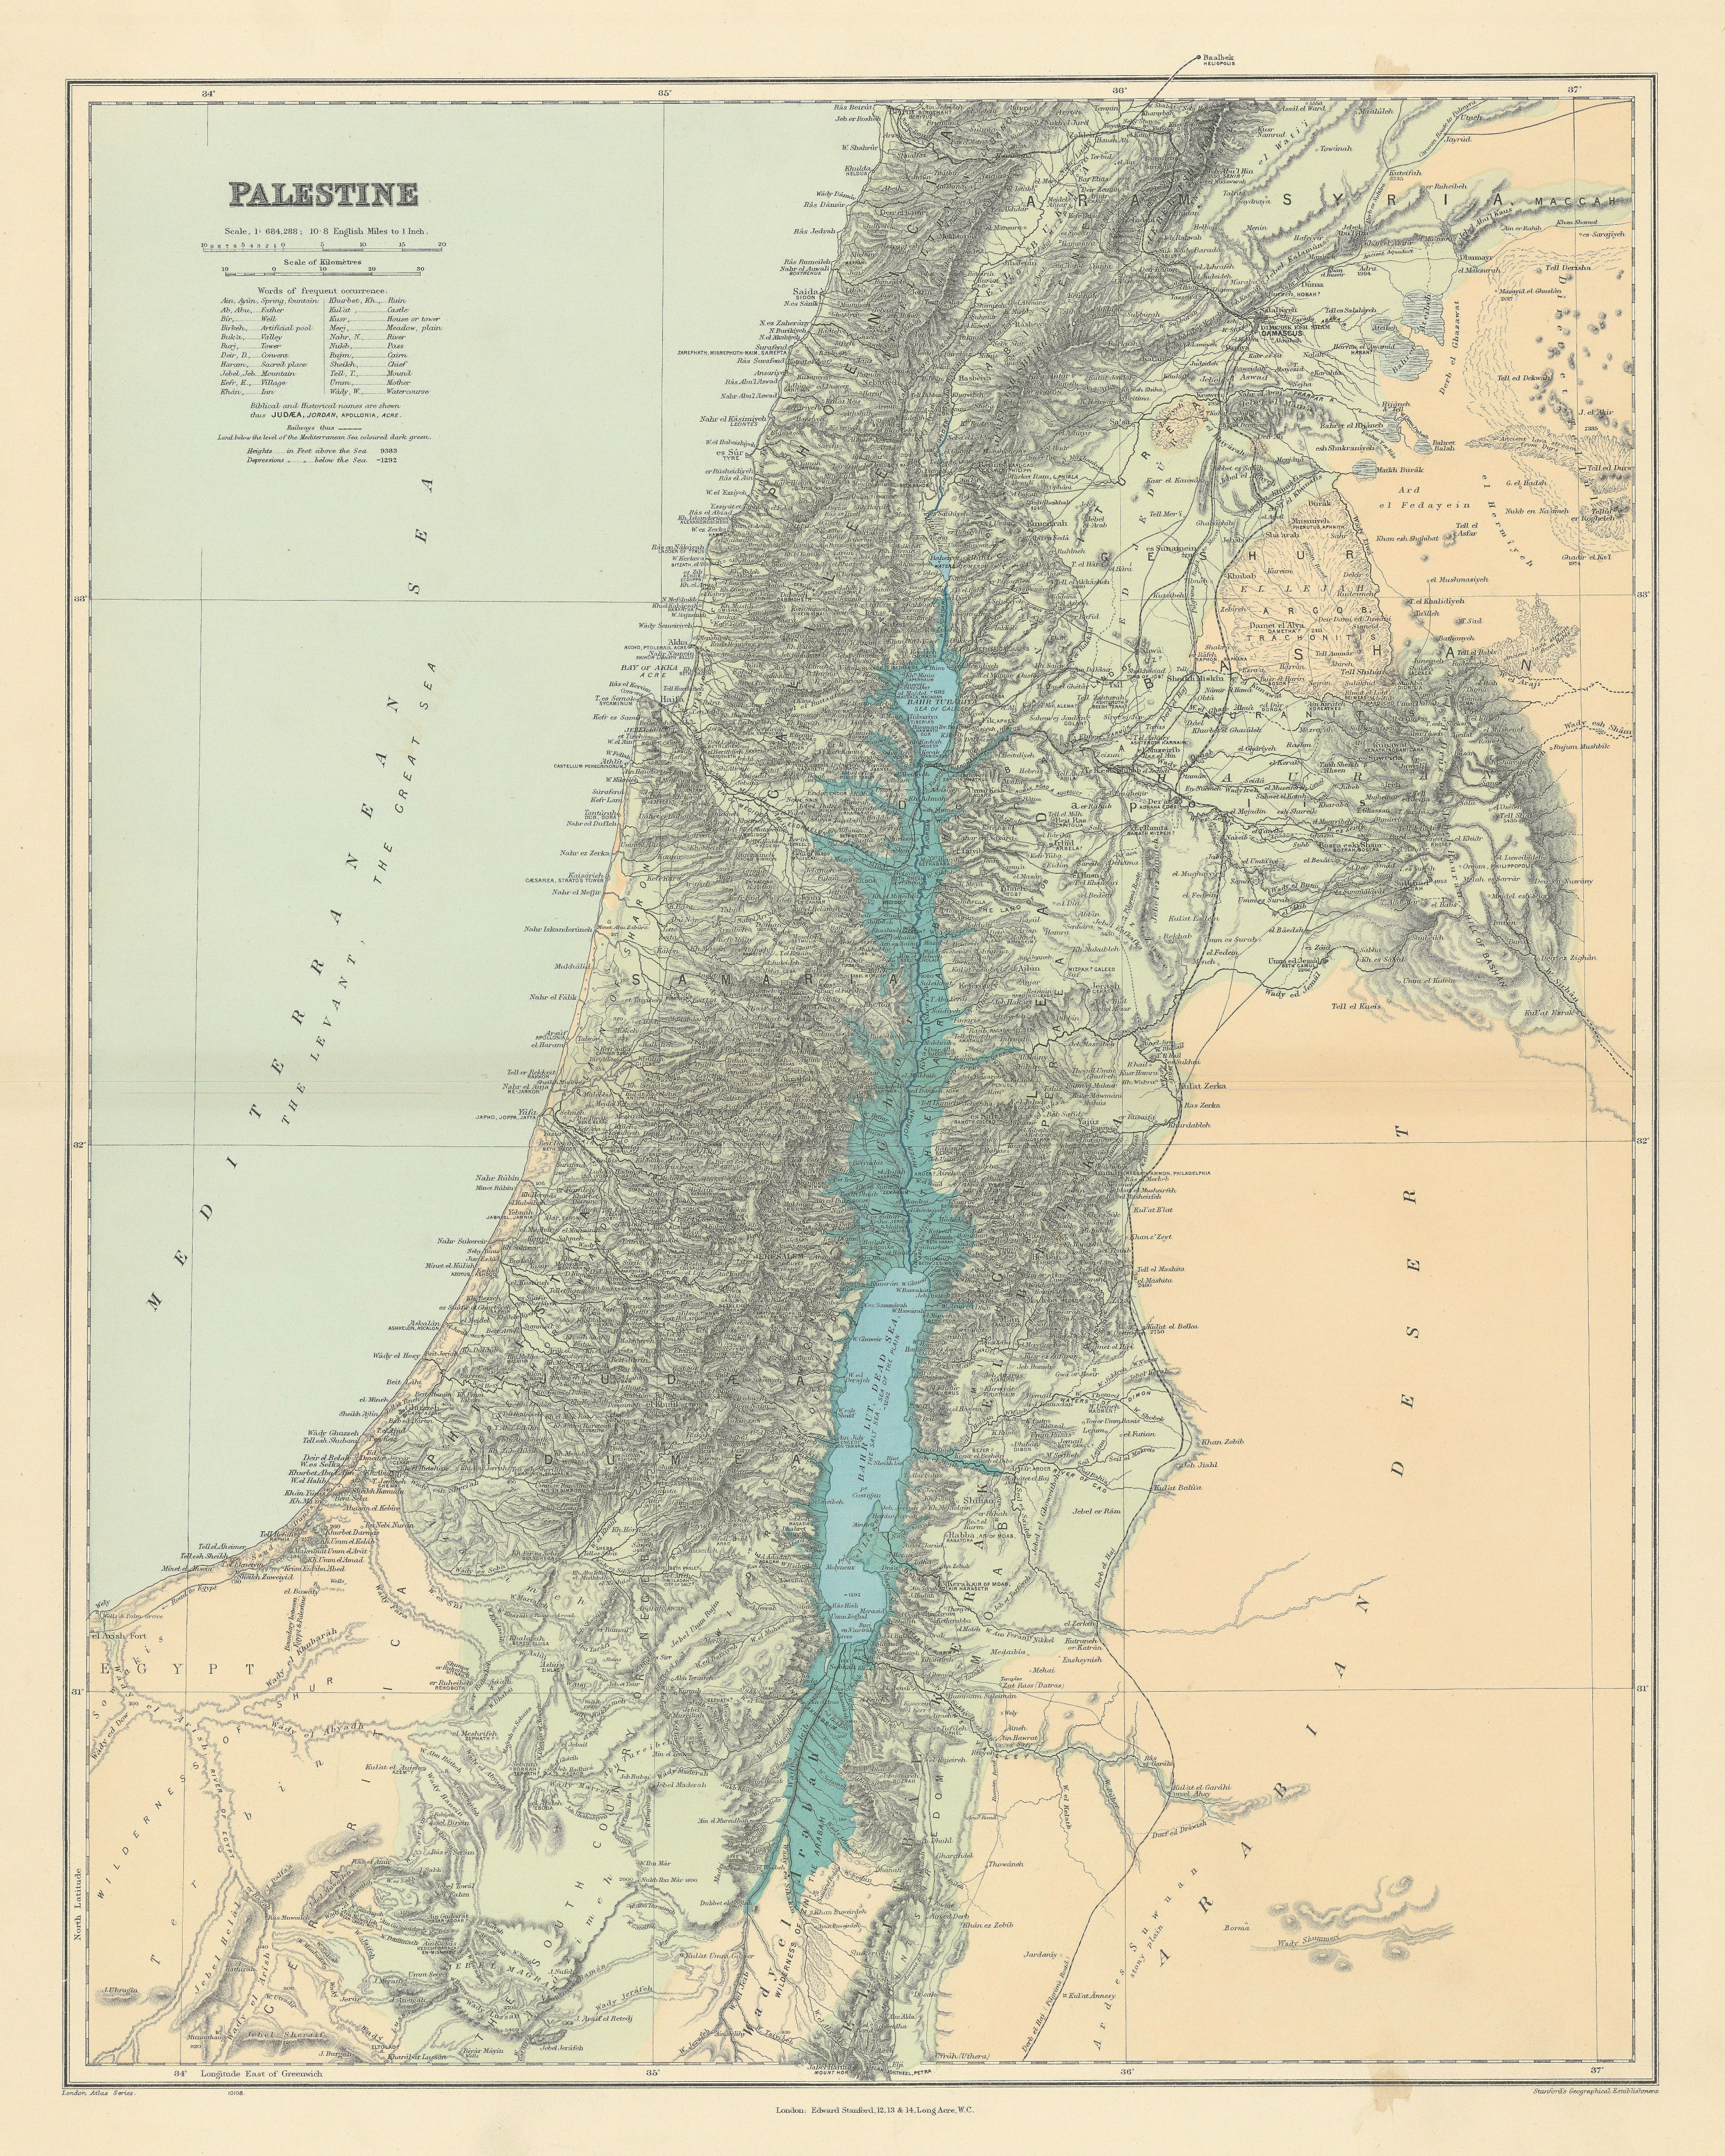 Palestine Holy Land Israel Lebanon Jordan Syria Biblical names STANFORD 1904 map